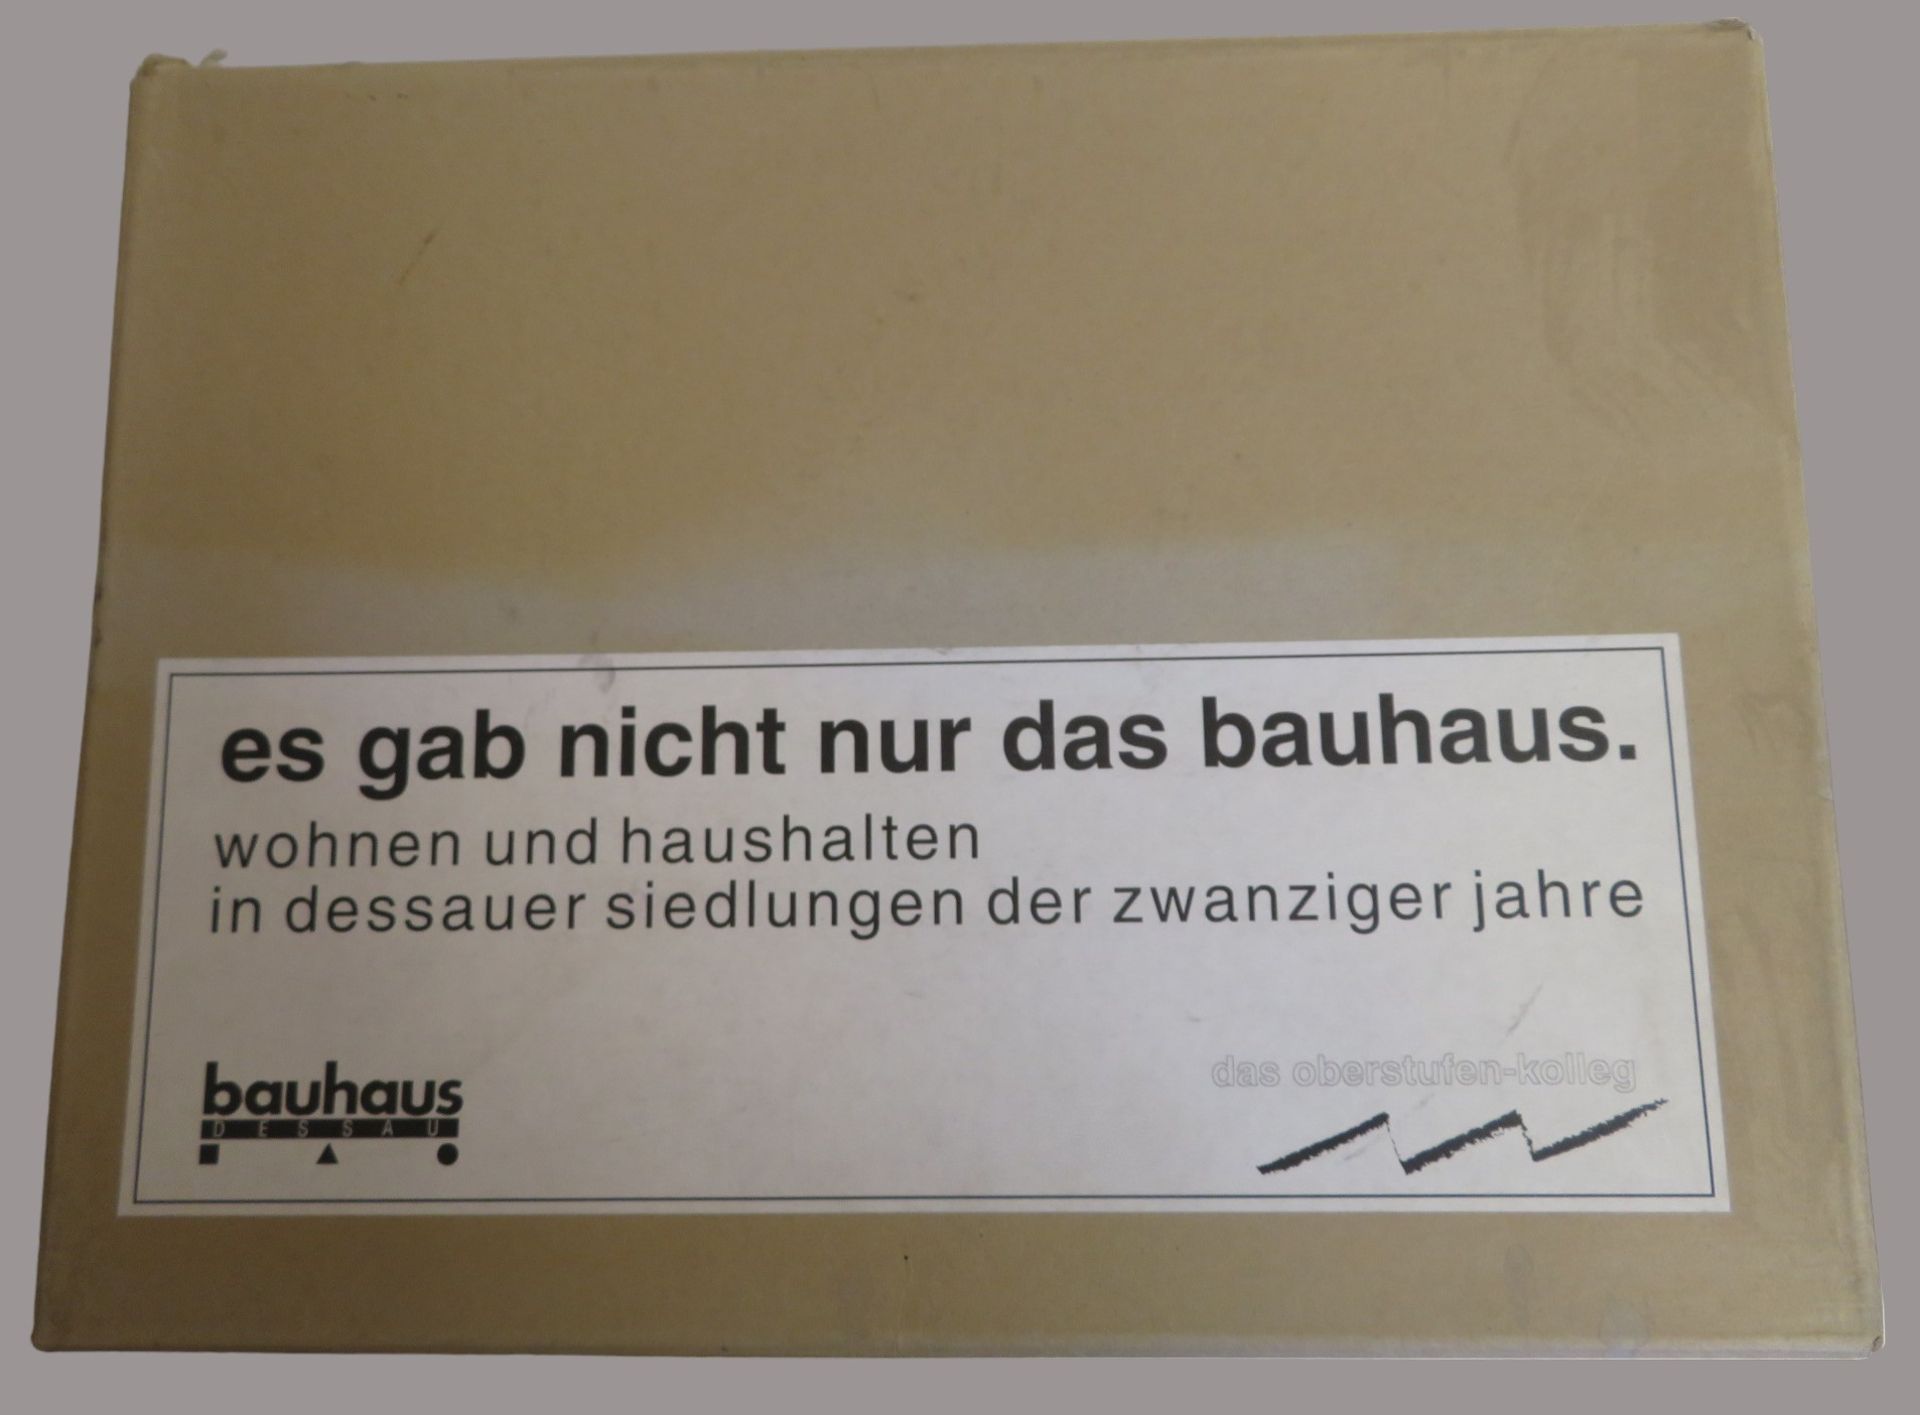 Stiftung Bauhaus DessauProjektmanagement (Hrsg.)/Das Oberstufen-Kolleg: es gab nicht nur das bauhau